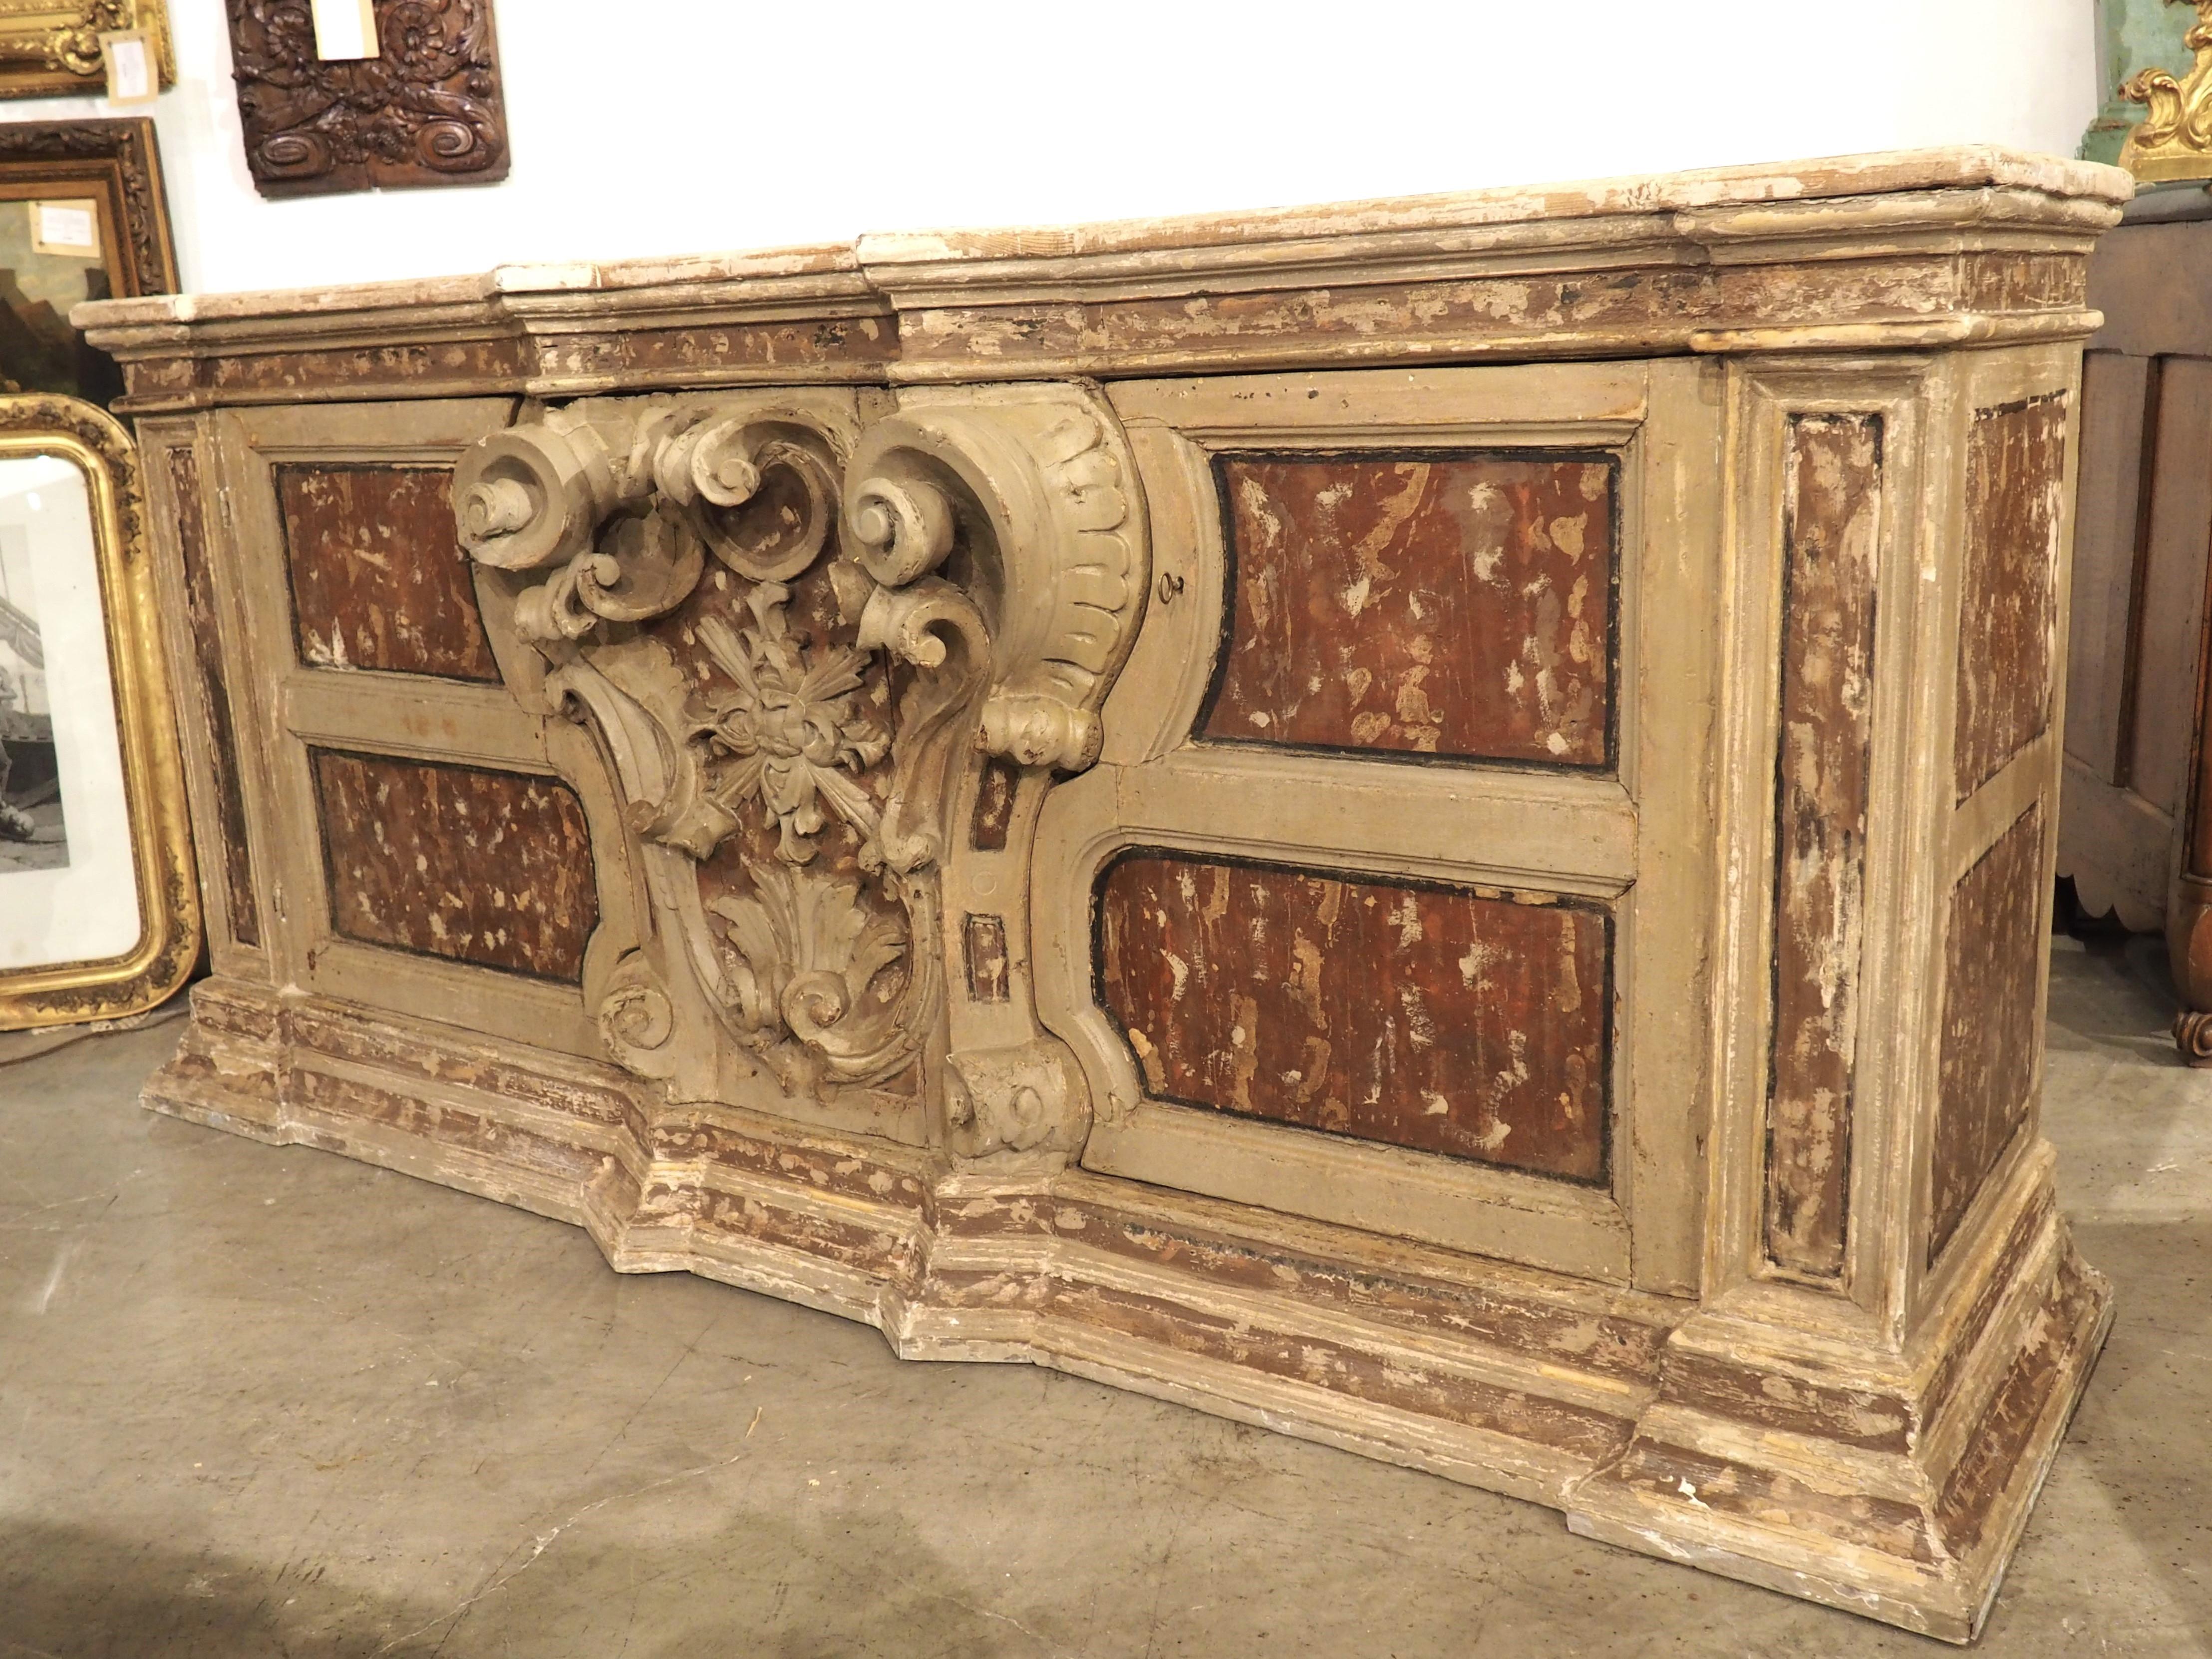 Datant des années 1700, le cartouche central de ce buffet de crédence provient d'un autel de Naples, en Italie. Le cartouche est une fantastique sculpture en relief d'une console très chantournée avec un médaillon feuillu entouré de volutes, de